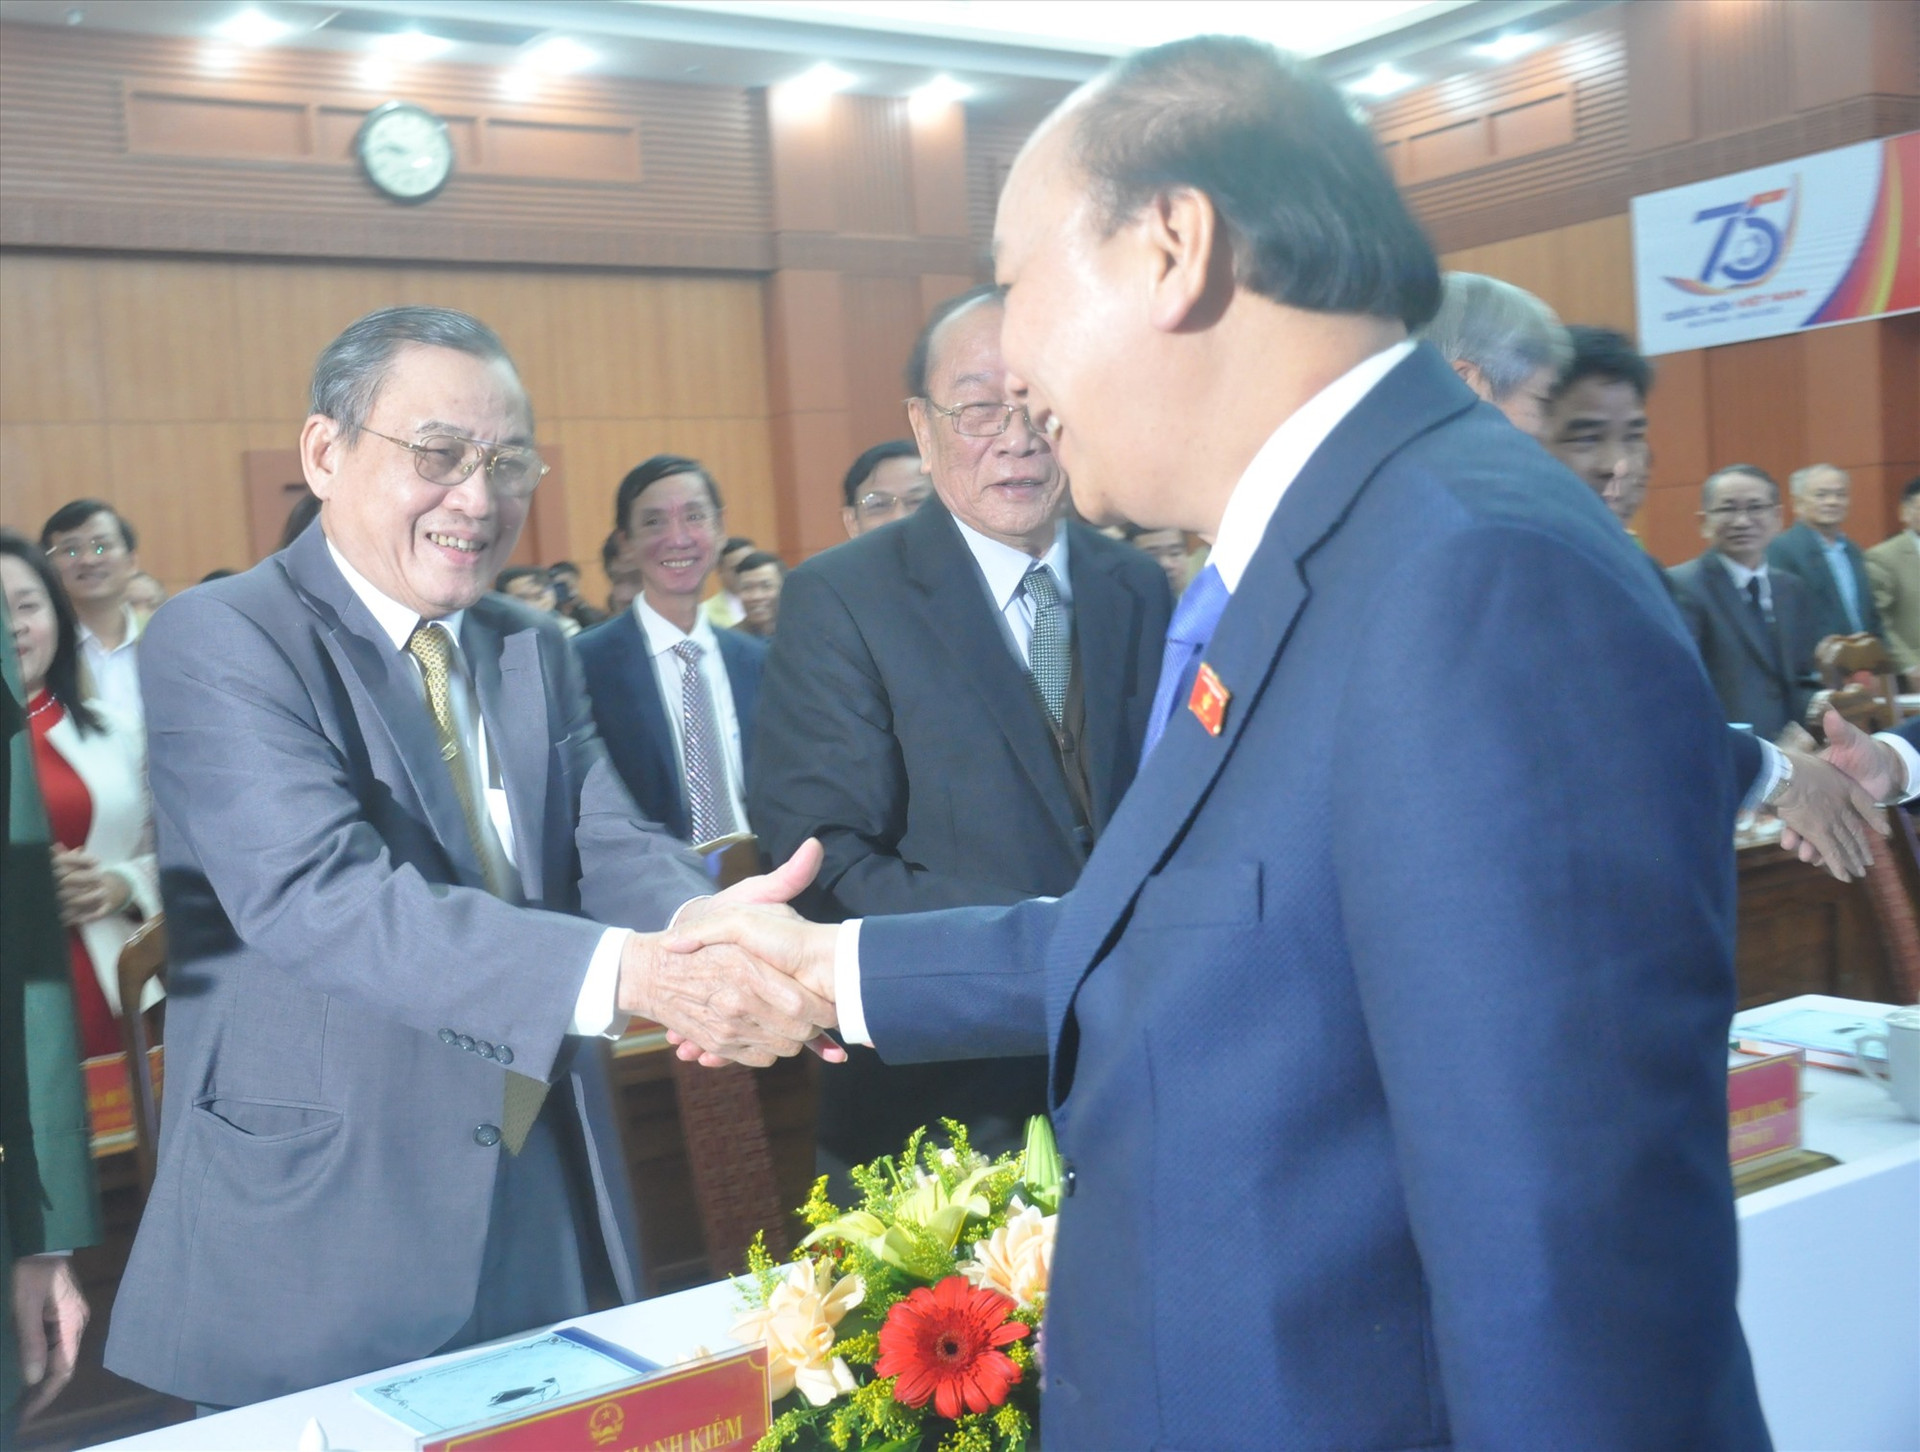 Thủ tướng thăm hỏi các đại biểu dự Lễ kỷ niệm 75 năm Quốc hội Việt Nam và tổng kết hoạt động của Đoàn ĐNQH tỉnh. Ảnh: N.Đ